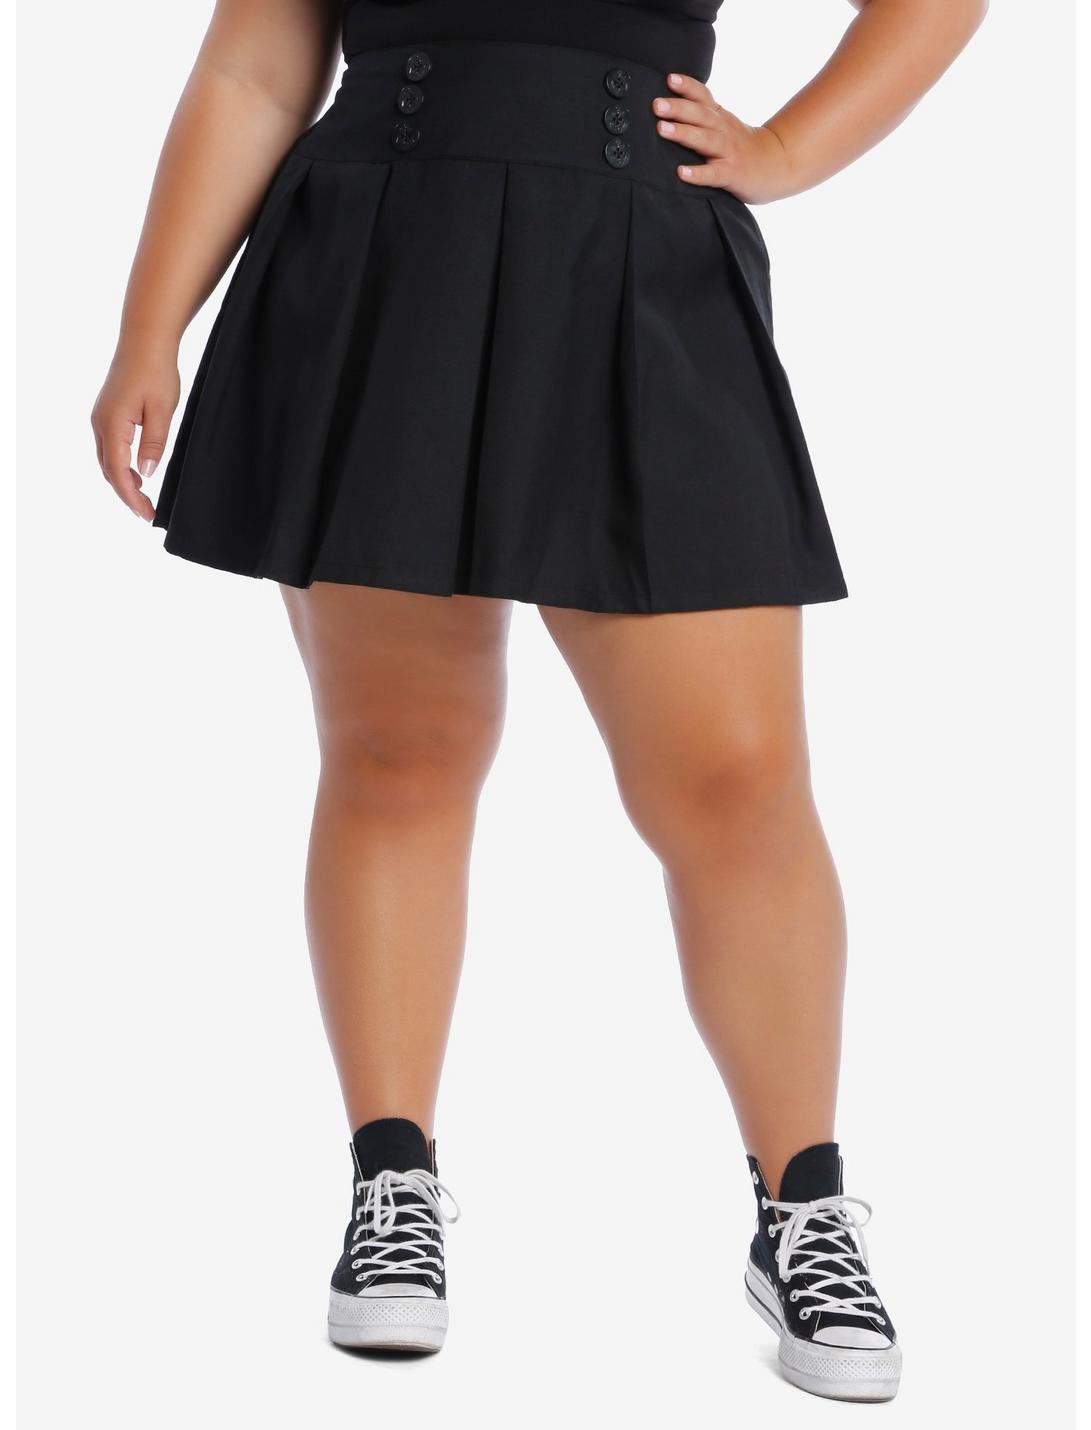 Sailor Button Detail Pleated Skirt Plus Size, BLACK, hi-res